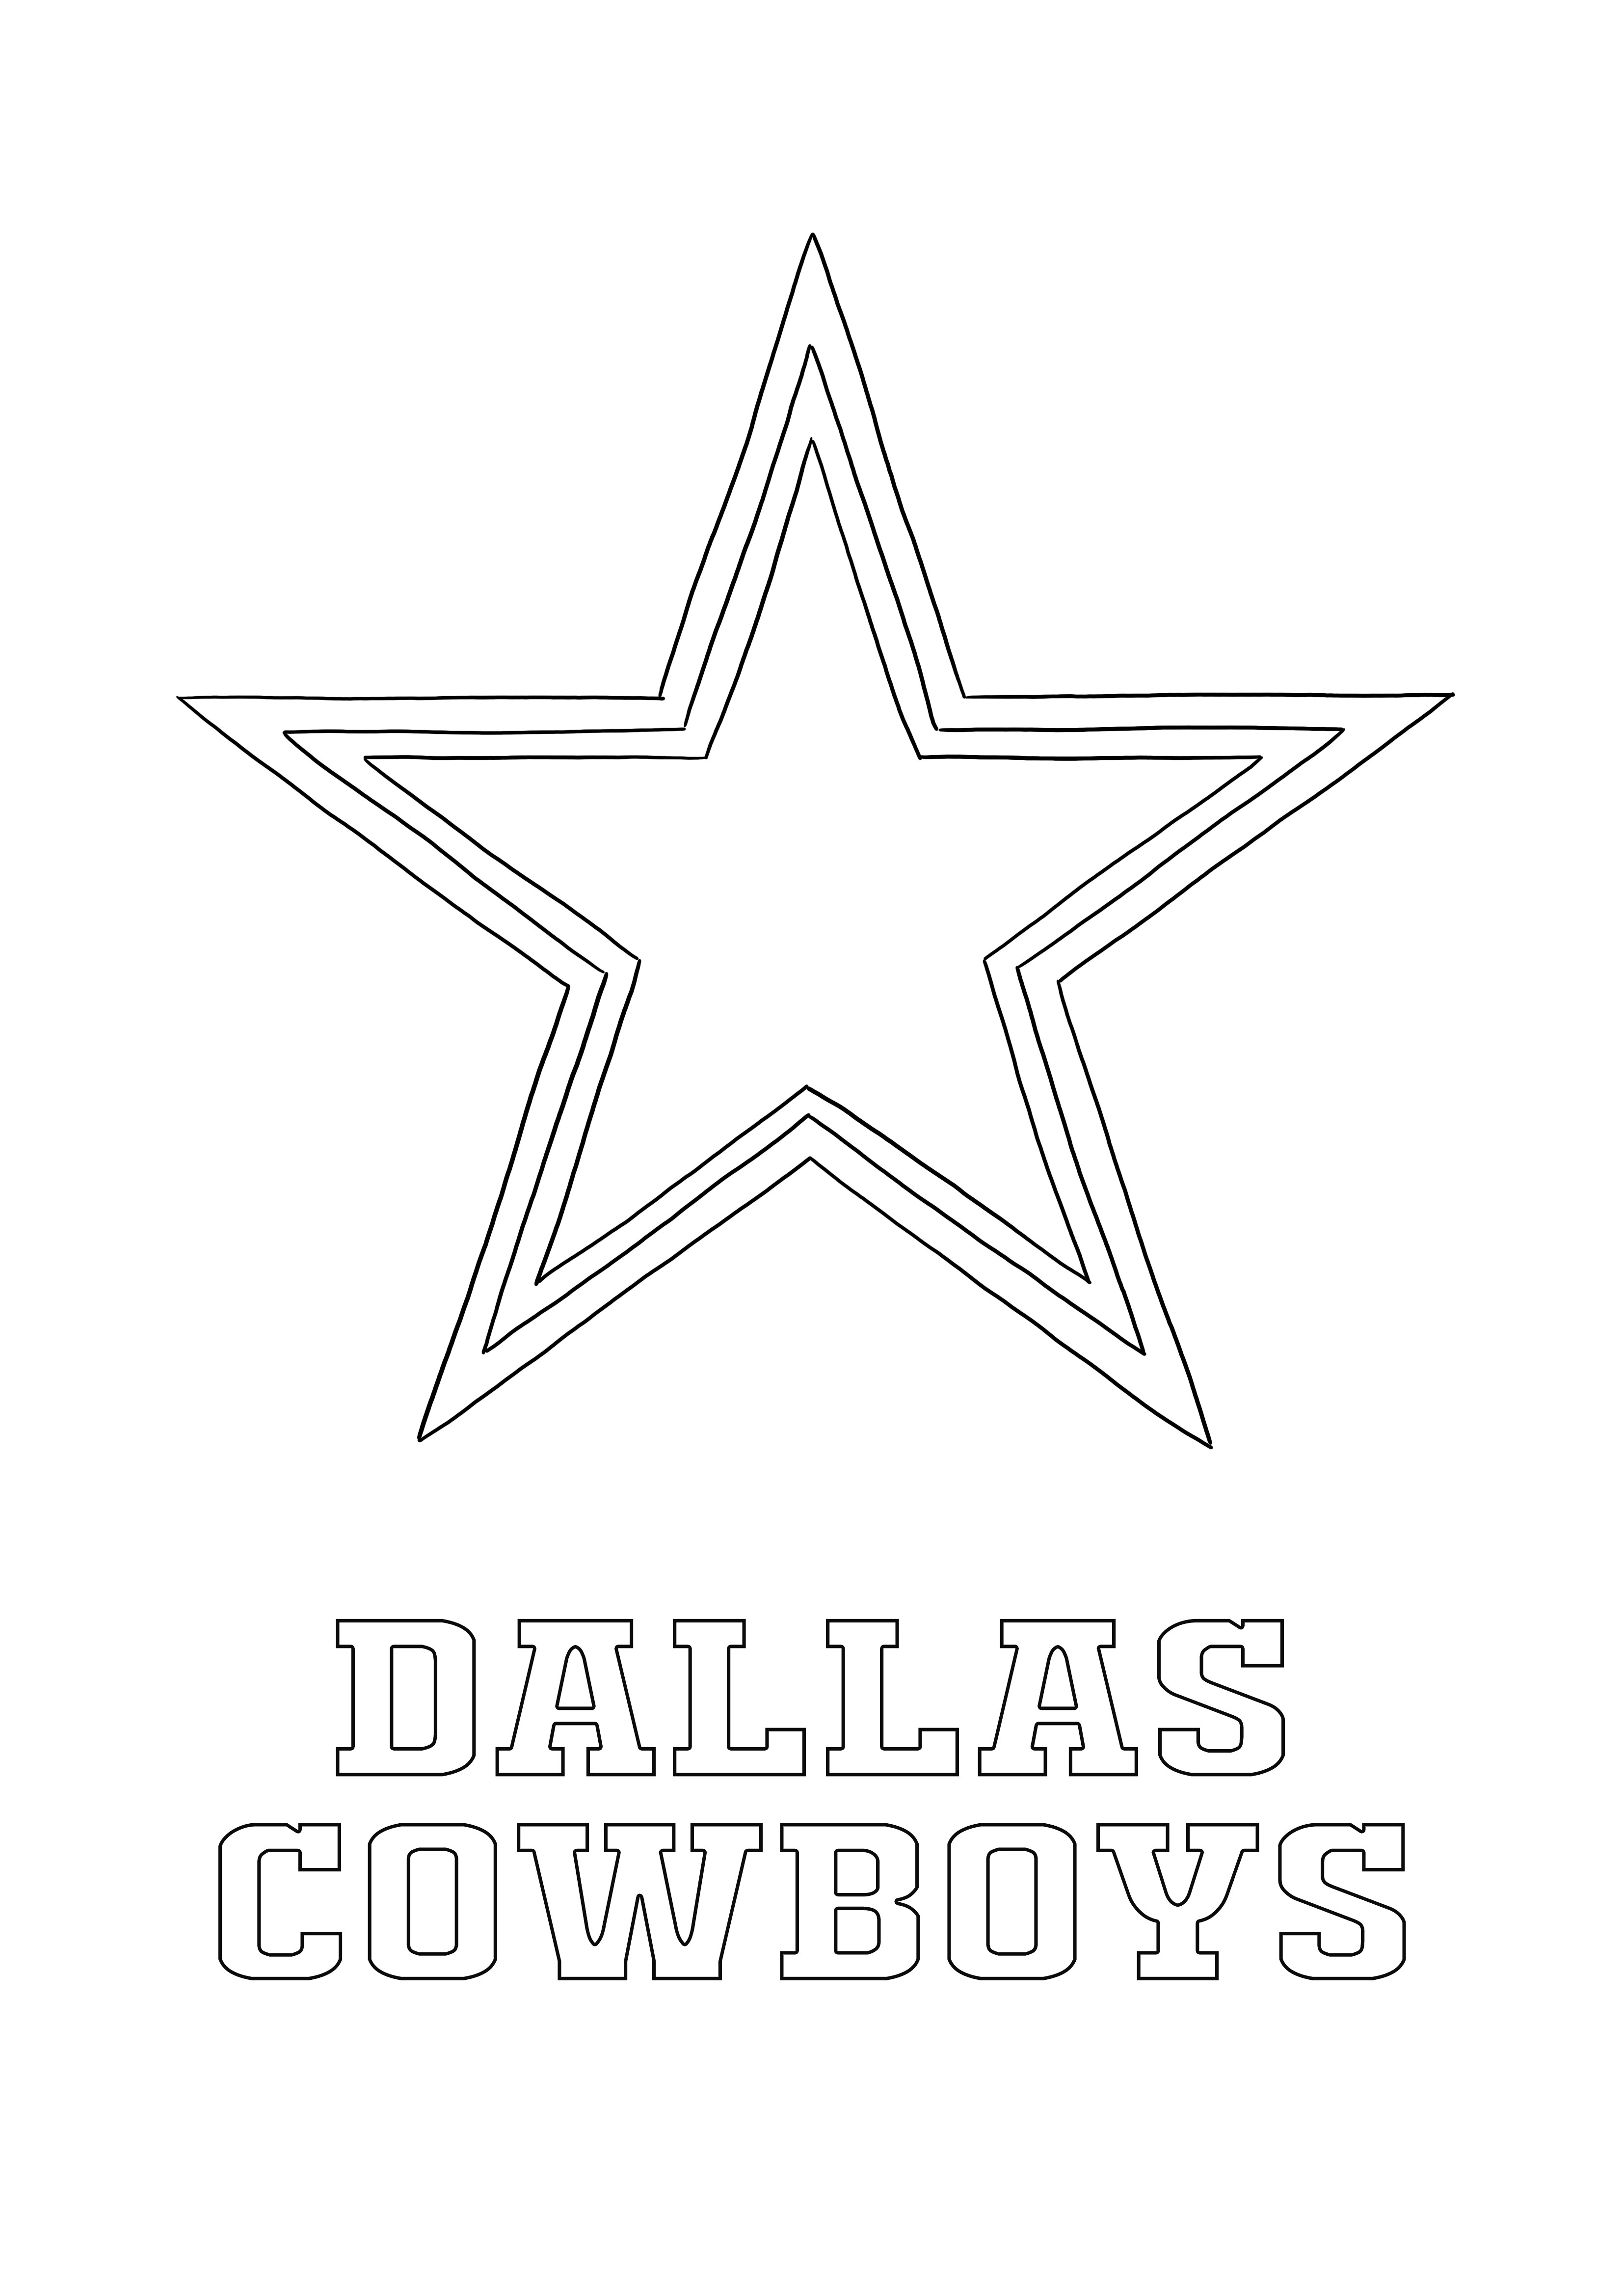 Tüm spor tutkunları için Dallas Cowboys Logosu ücretsiz boyama ve baskı